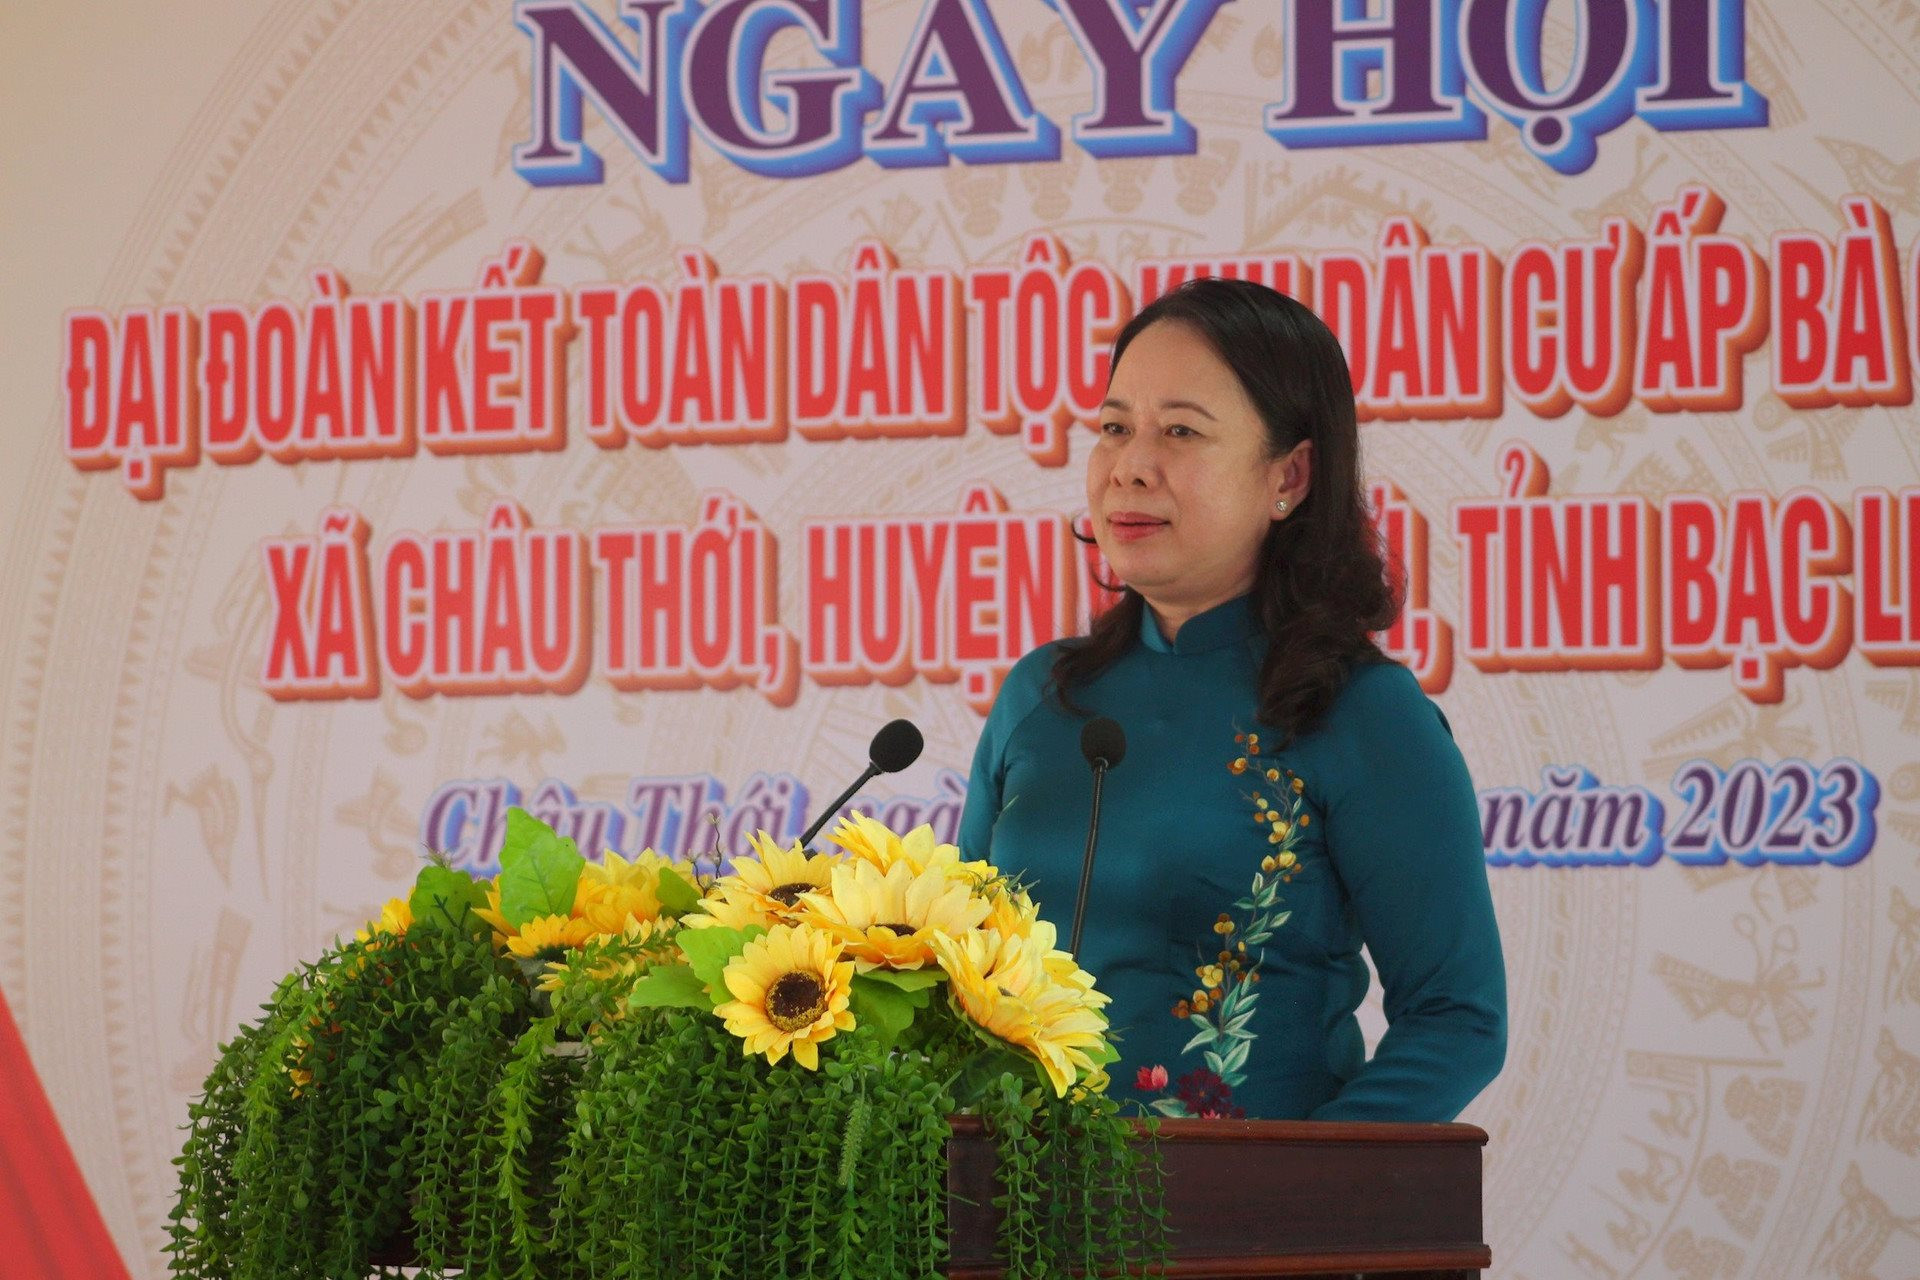 Phó Chủ Chủ tịch nước dự Ngày hội Đại đoàn kết toàn dân tộc tại Bạc Liêu